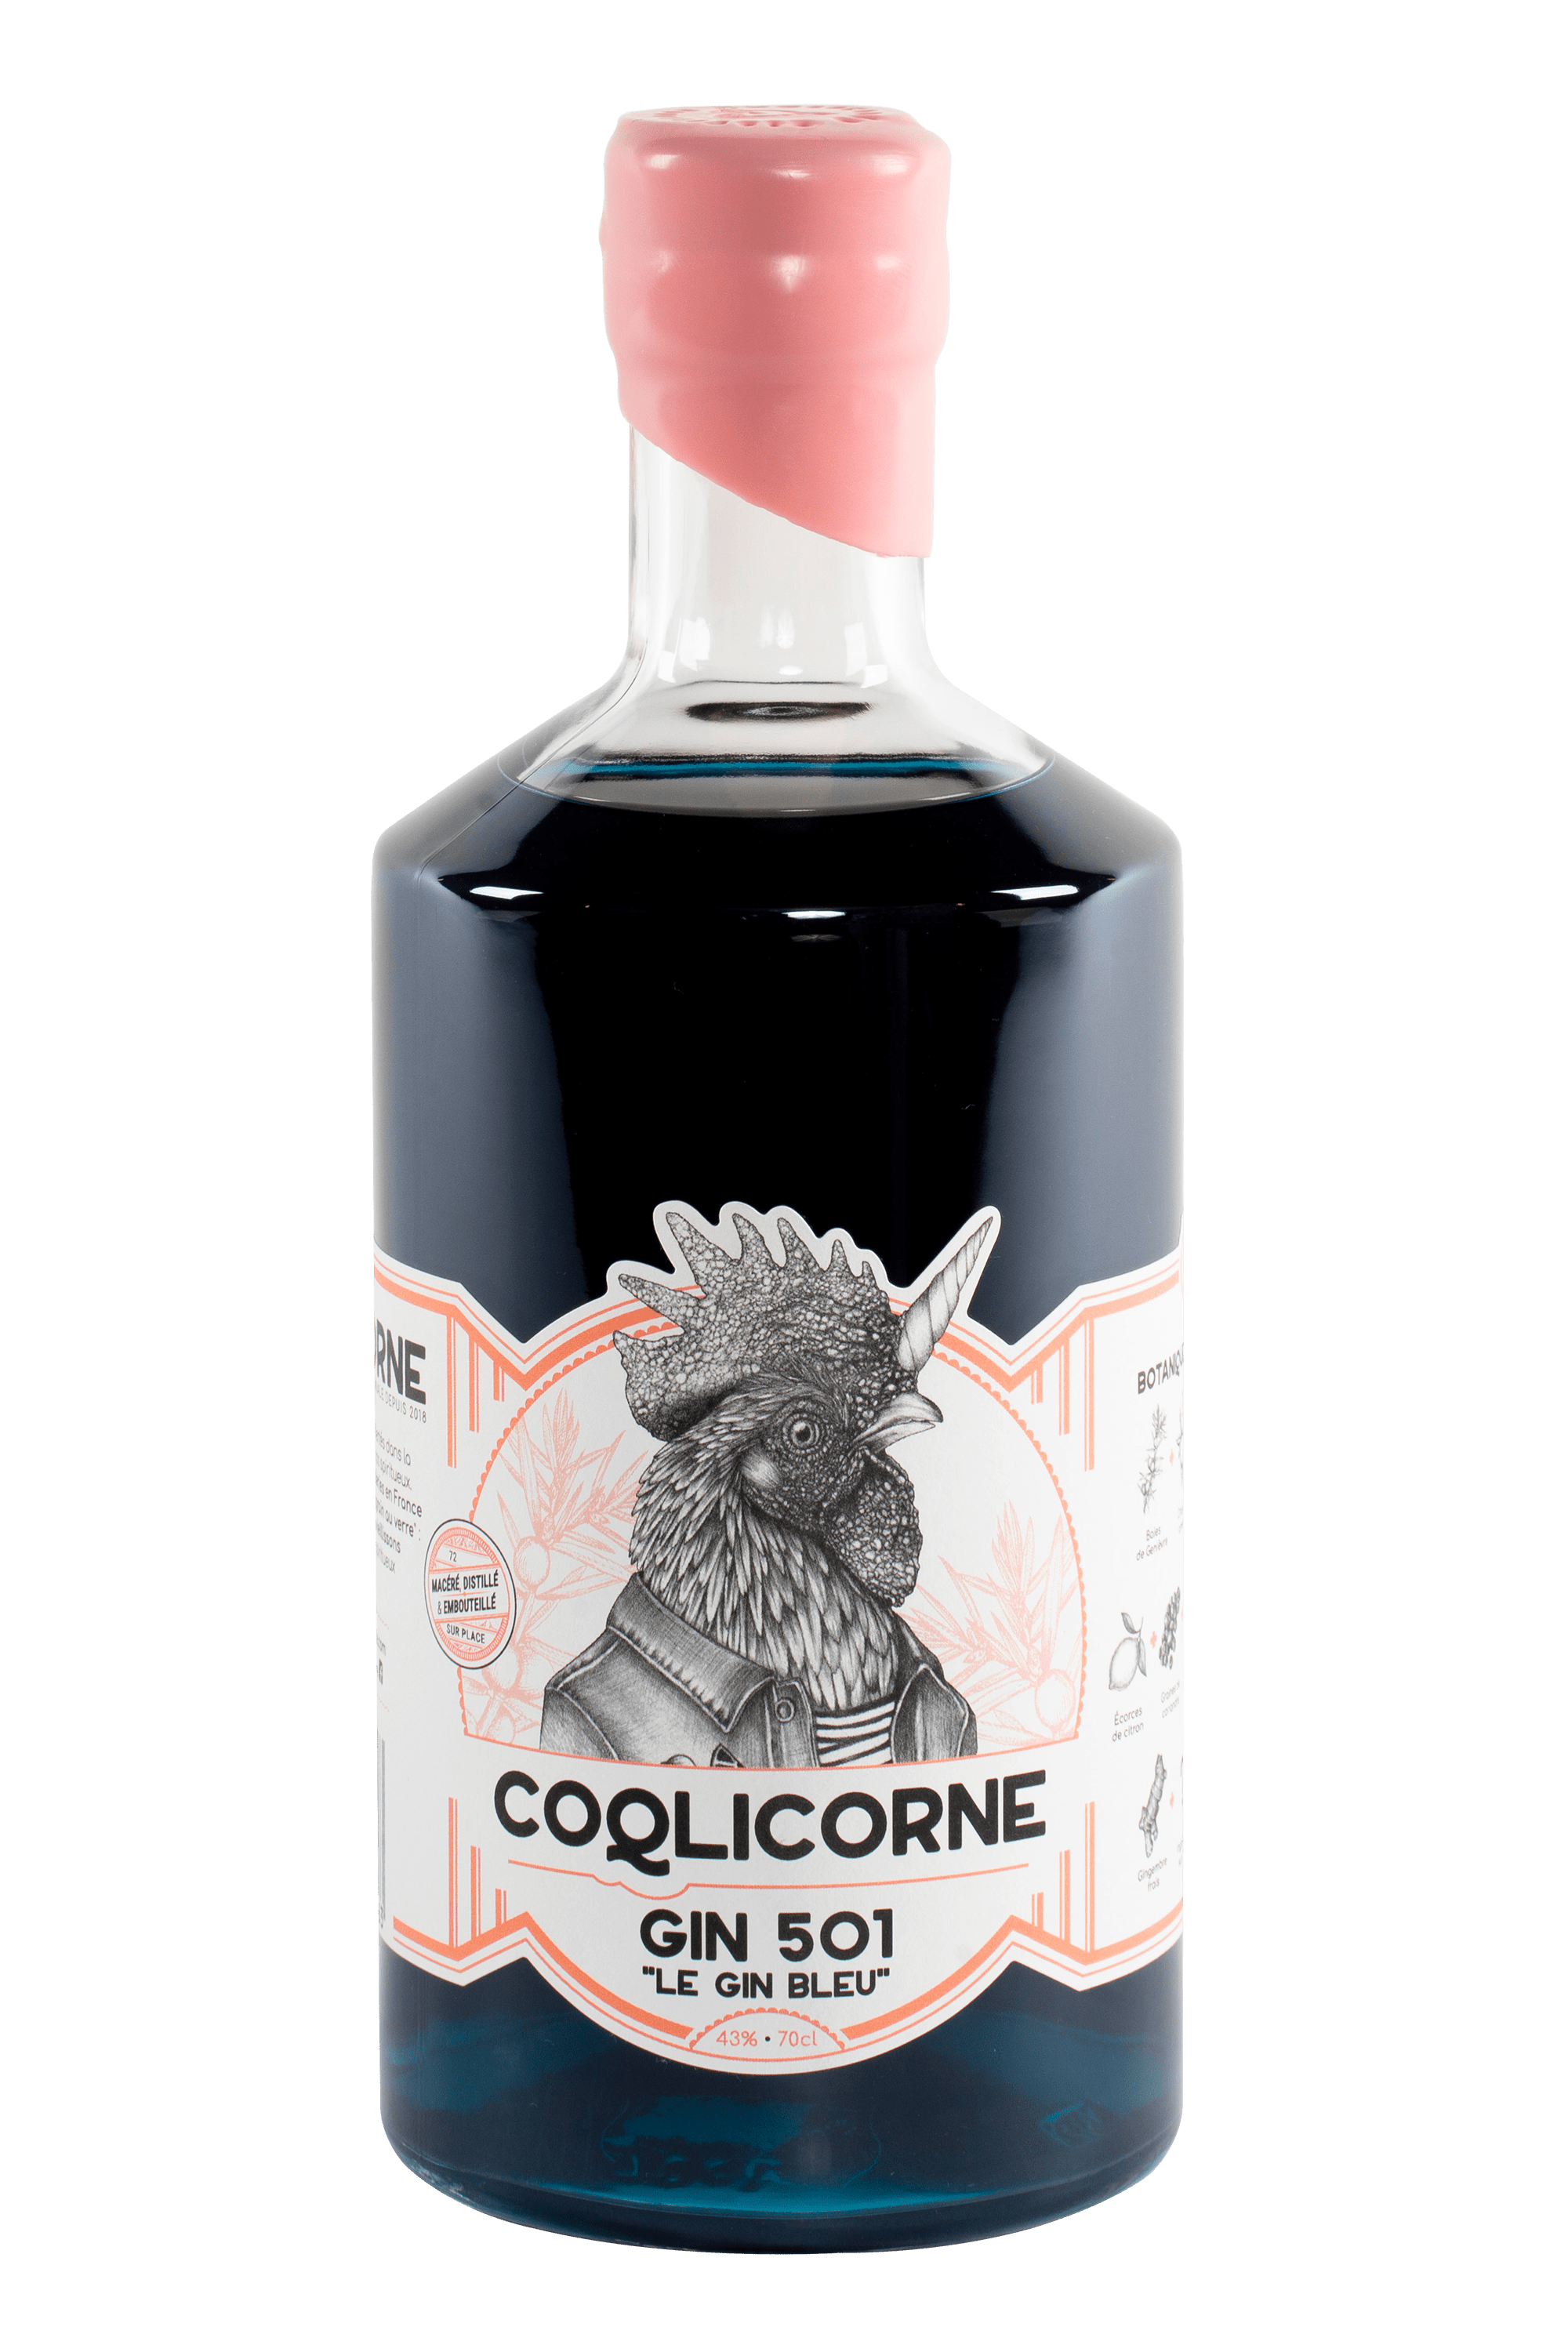 Bouteille de gin français 501 de la distillerie Coqlicorne